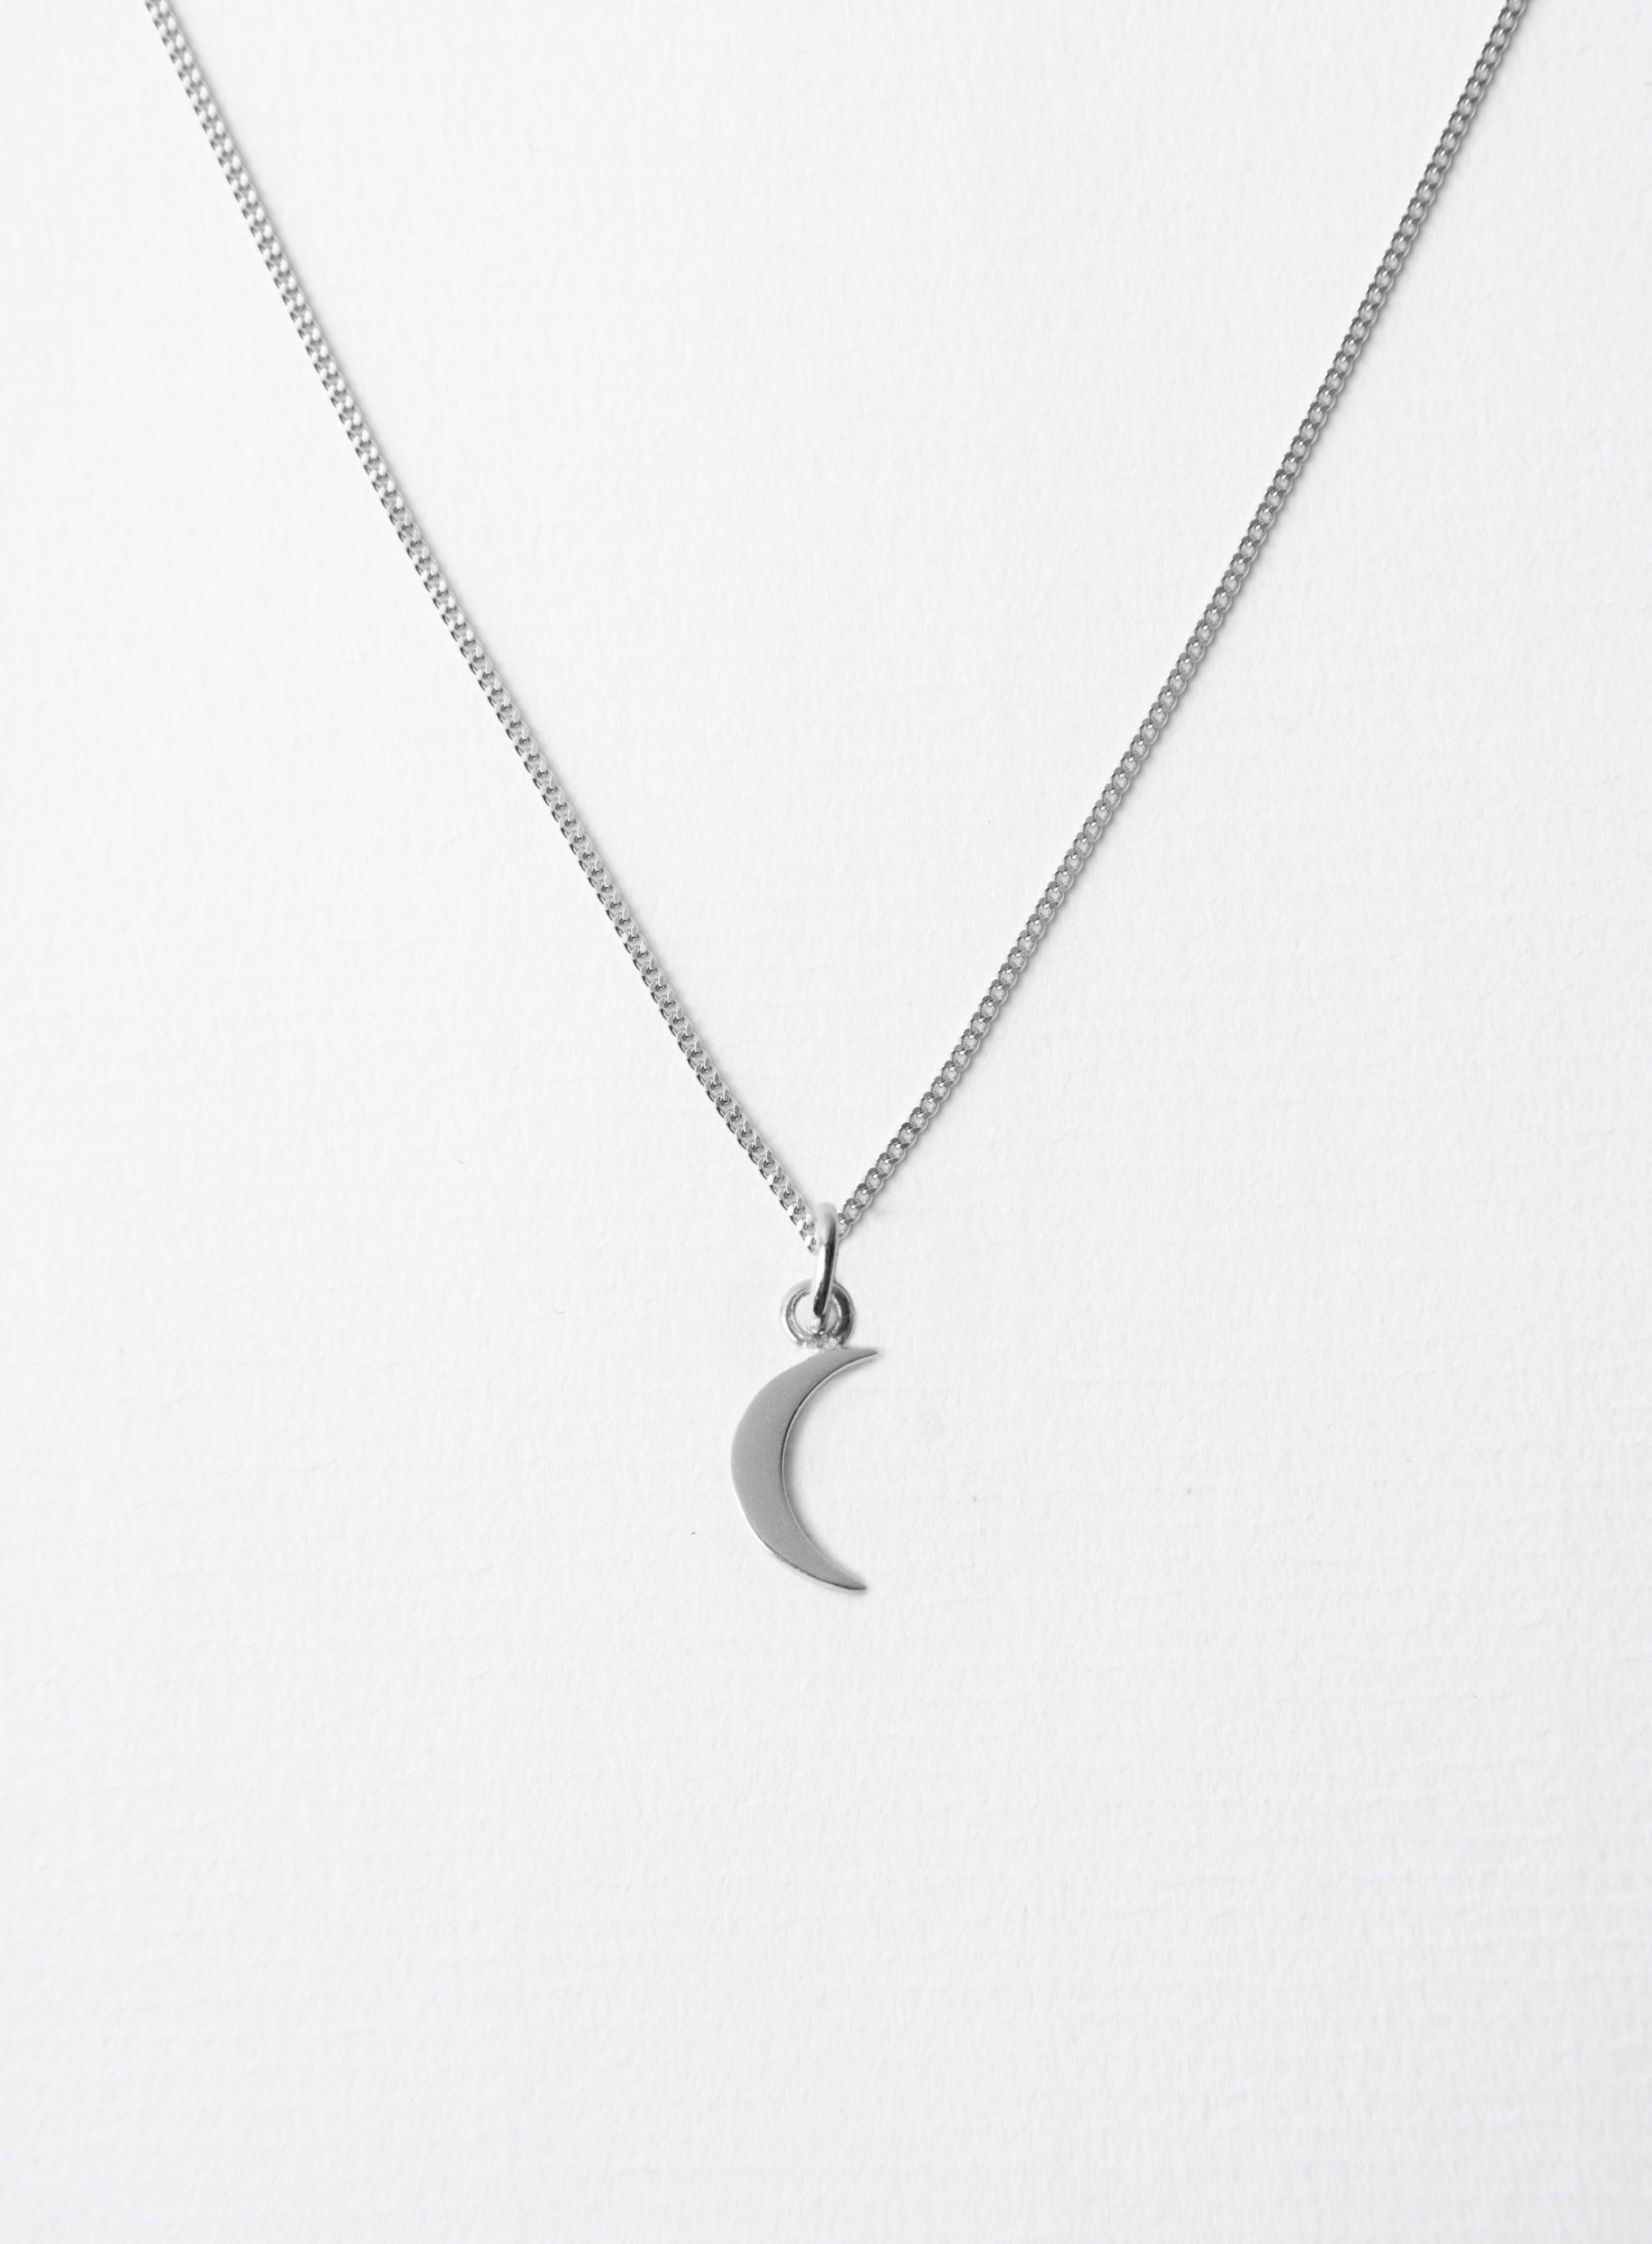 Small Moon Silver on Plain Chain 45 cm